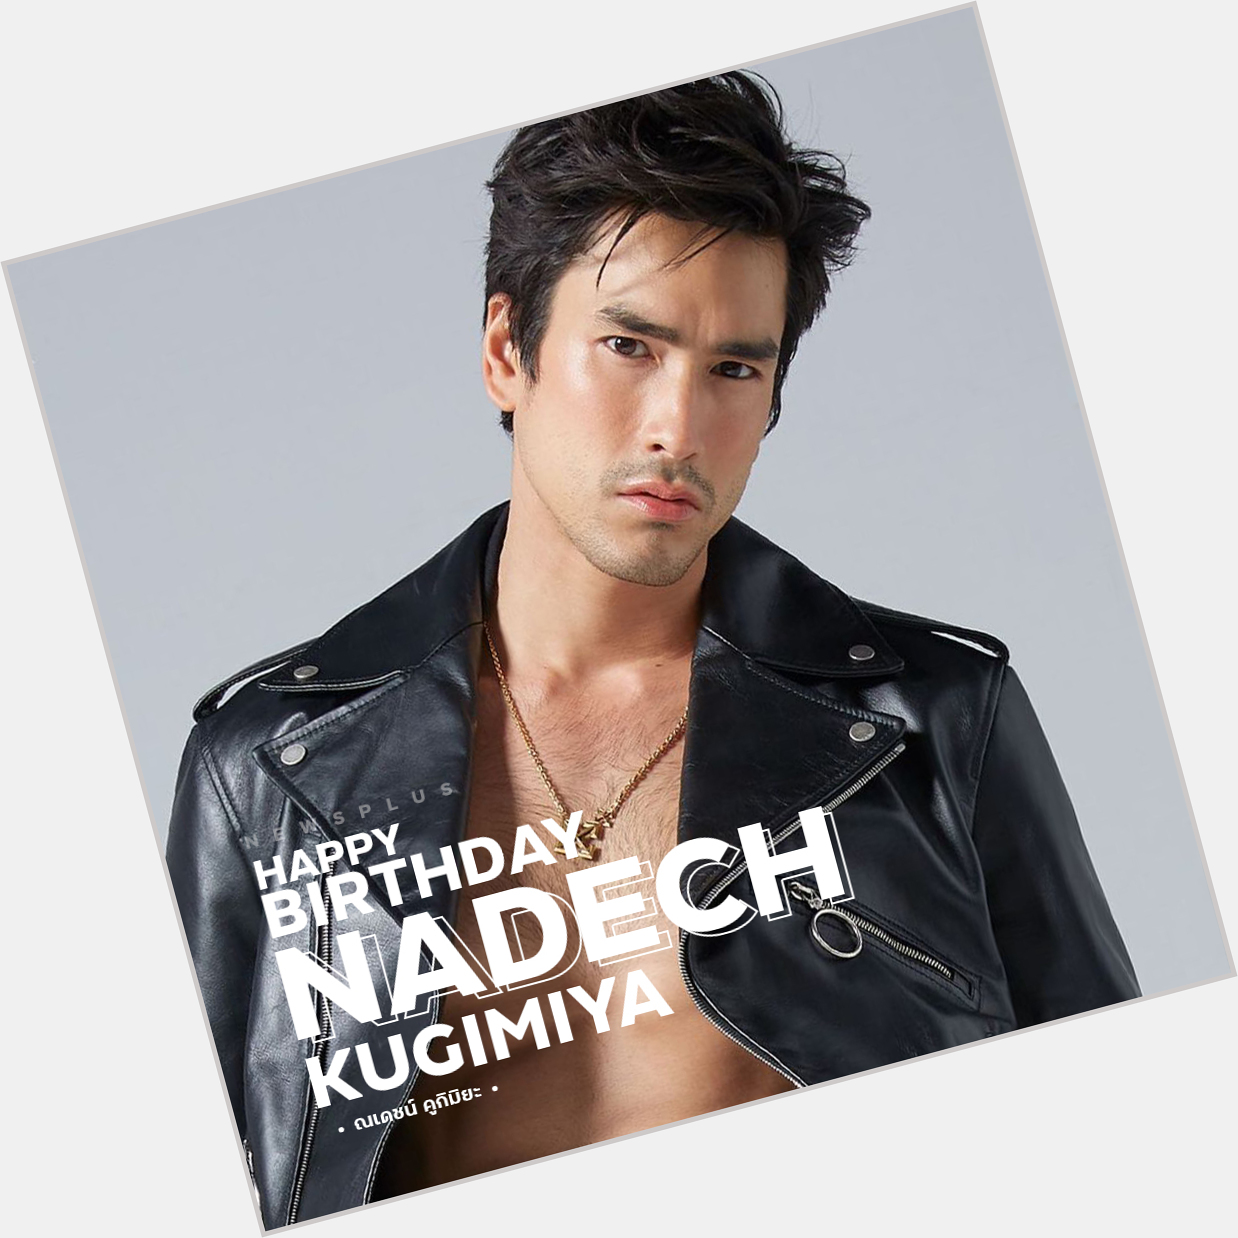 Happy birthday Nadech Kugimiya   